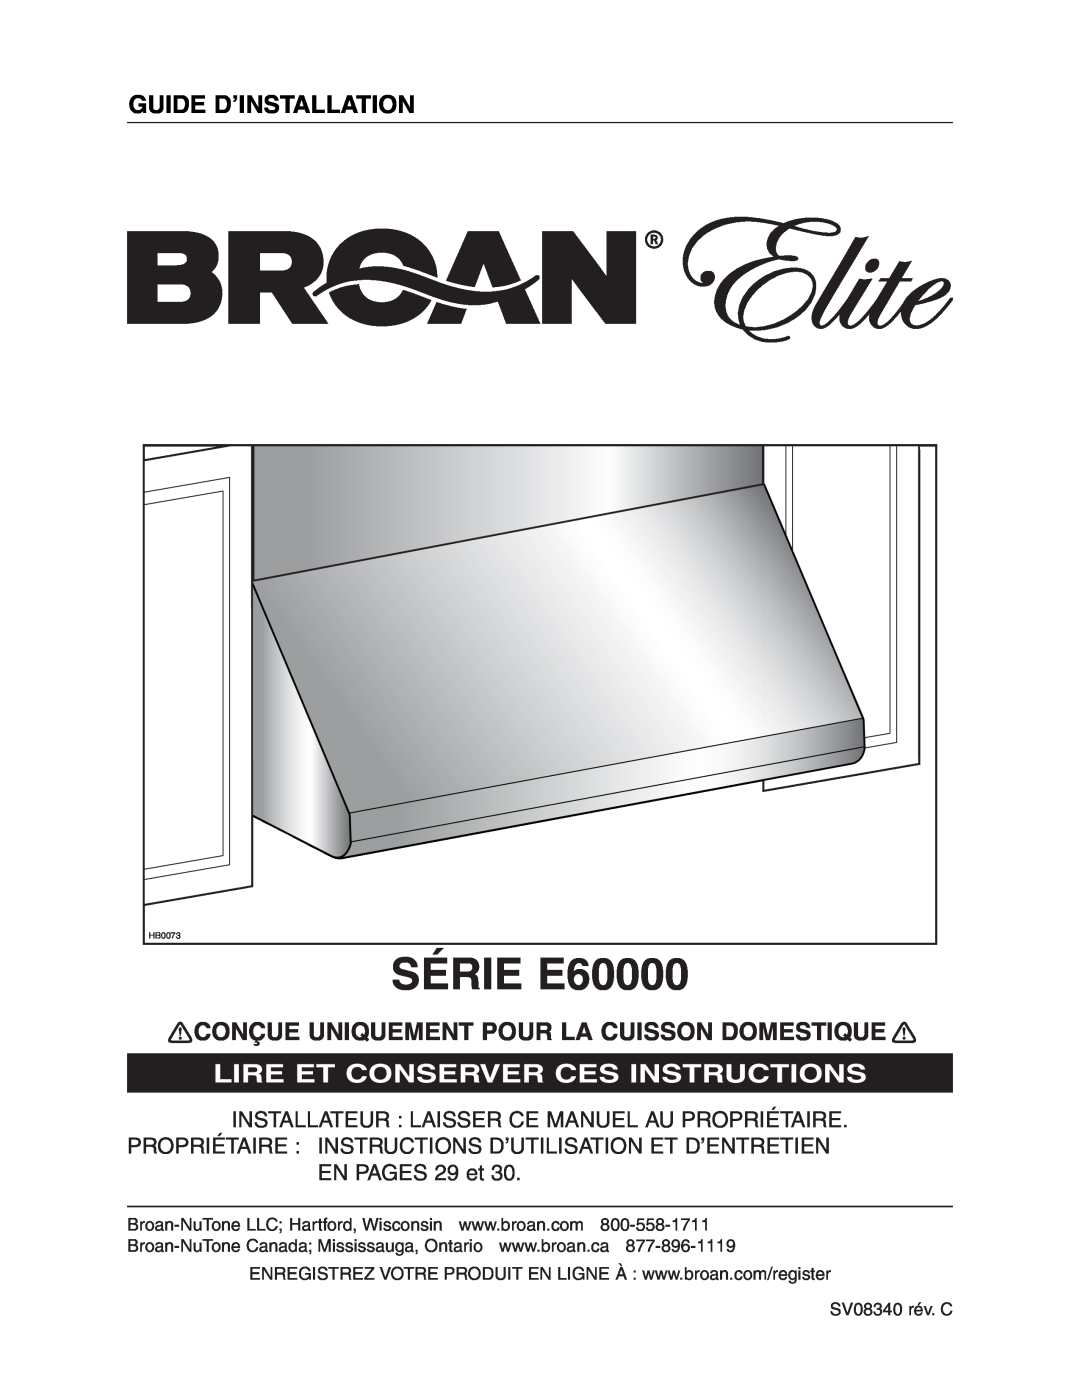 Broan E6030SS, E6036SS SÉRIE E60000, Guide D’Installation, Conçue Uniquement Pour La Cuisson Domestique, EN PAGES 29 et 